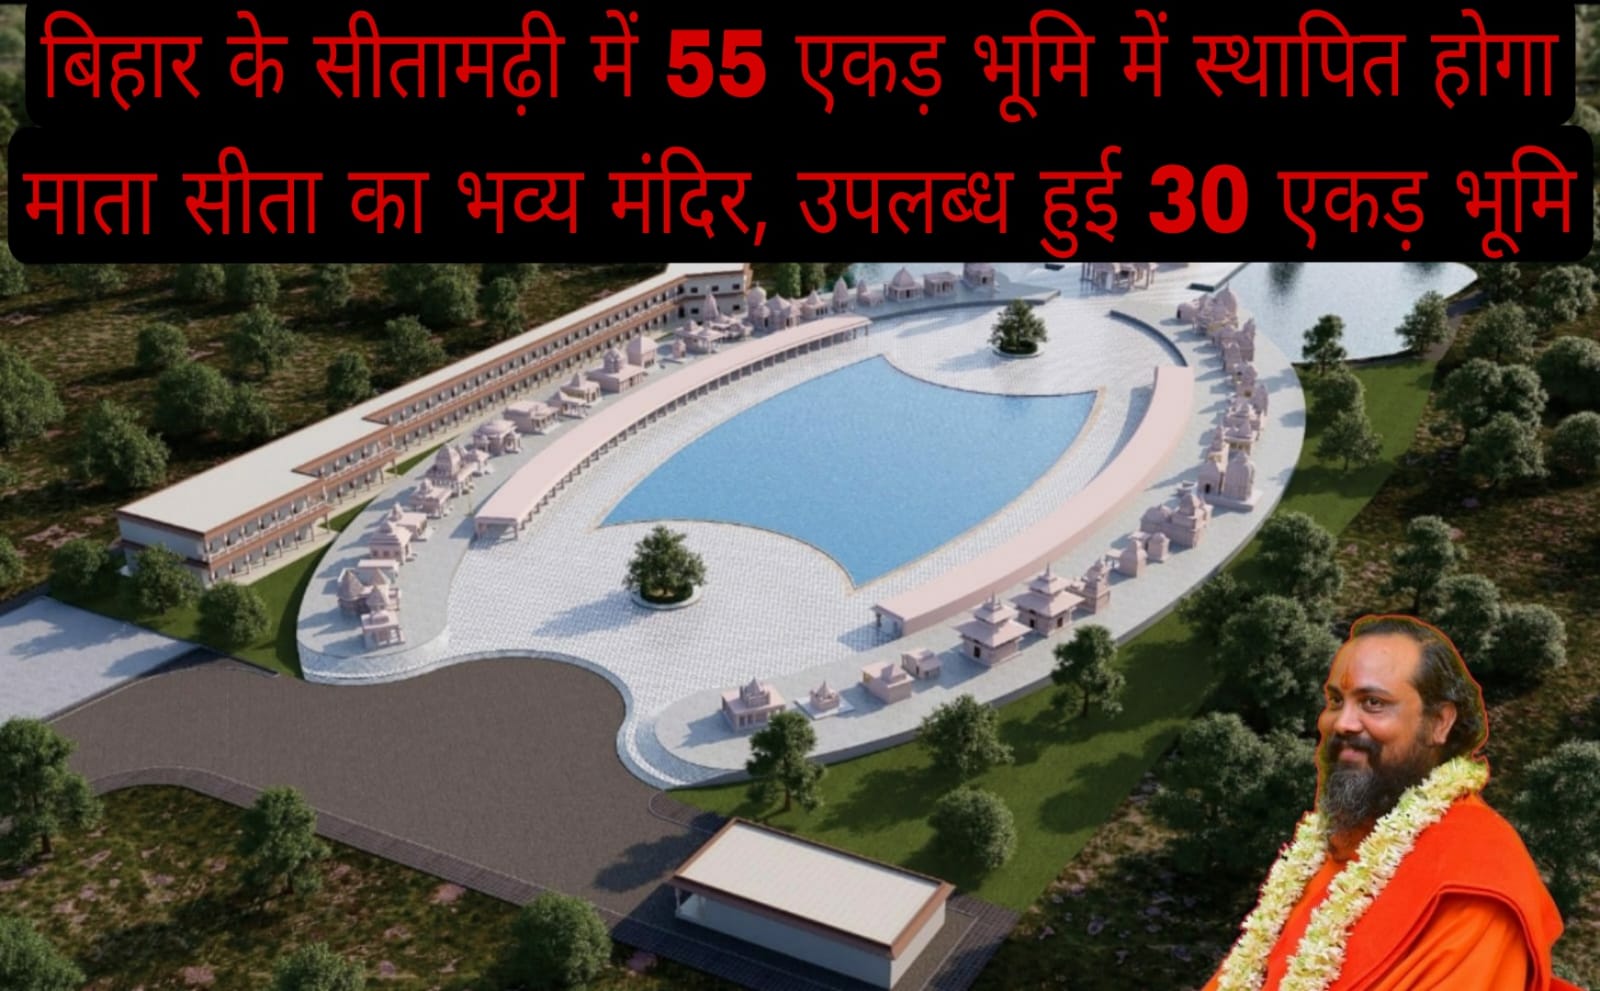 बिहार के सीतामढ़ी में 55 एकड़ भूमि में स्थापित होगा माता सीता का भव्य मंदिर, उपलब्ध हुई 30 एकड़ भूमि